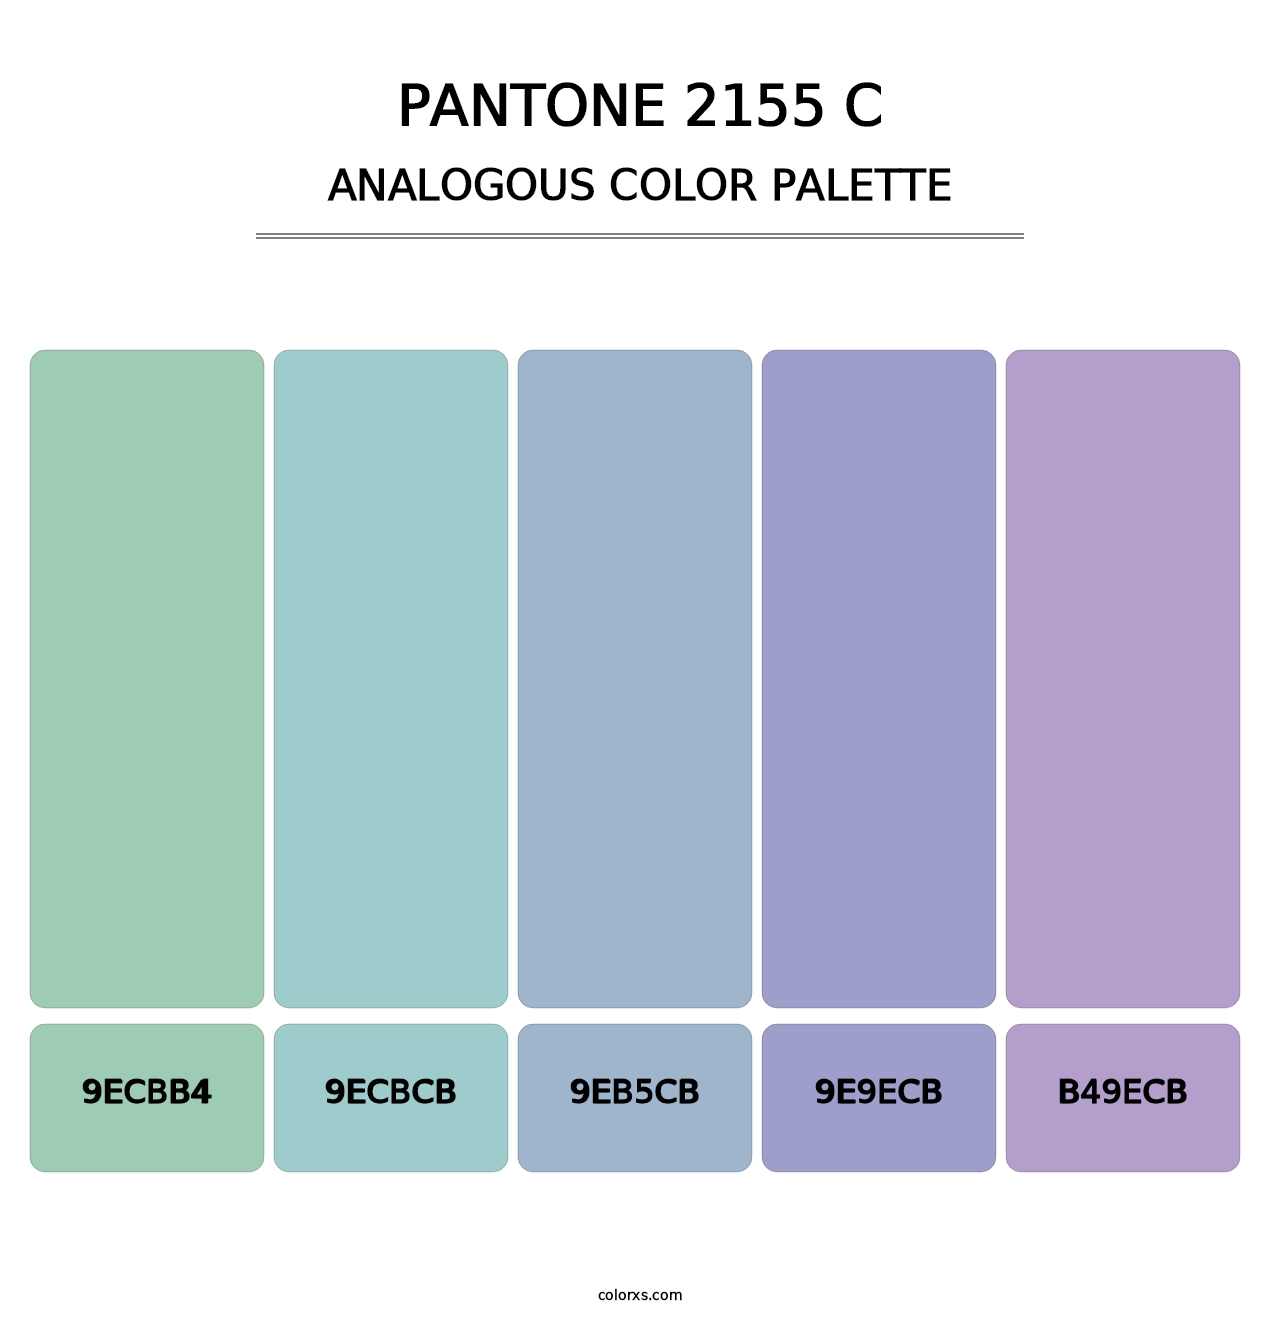 PANTONE 2155 C - Analogous Color Palette